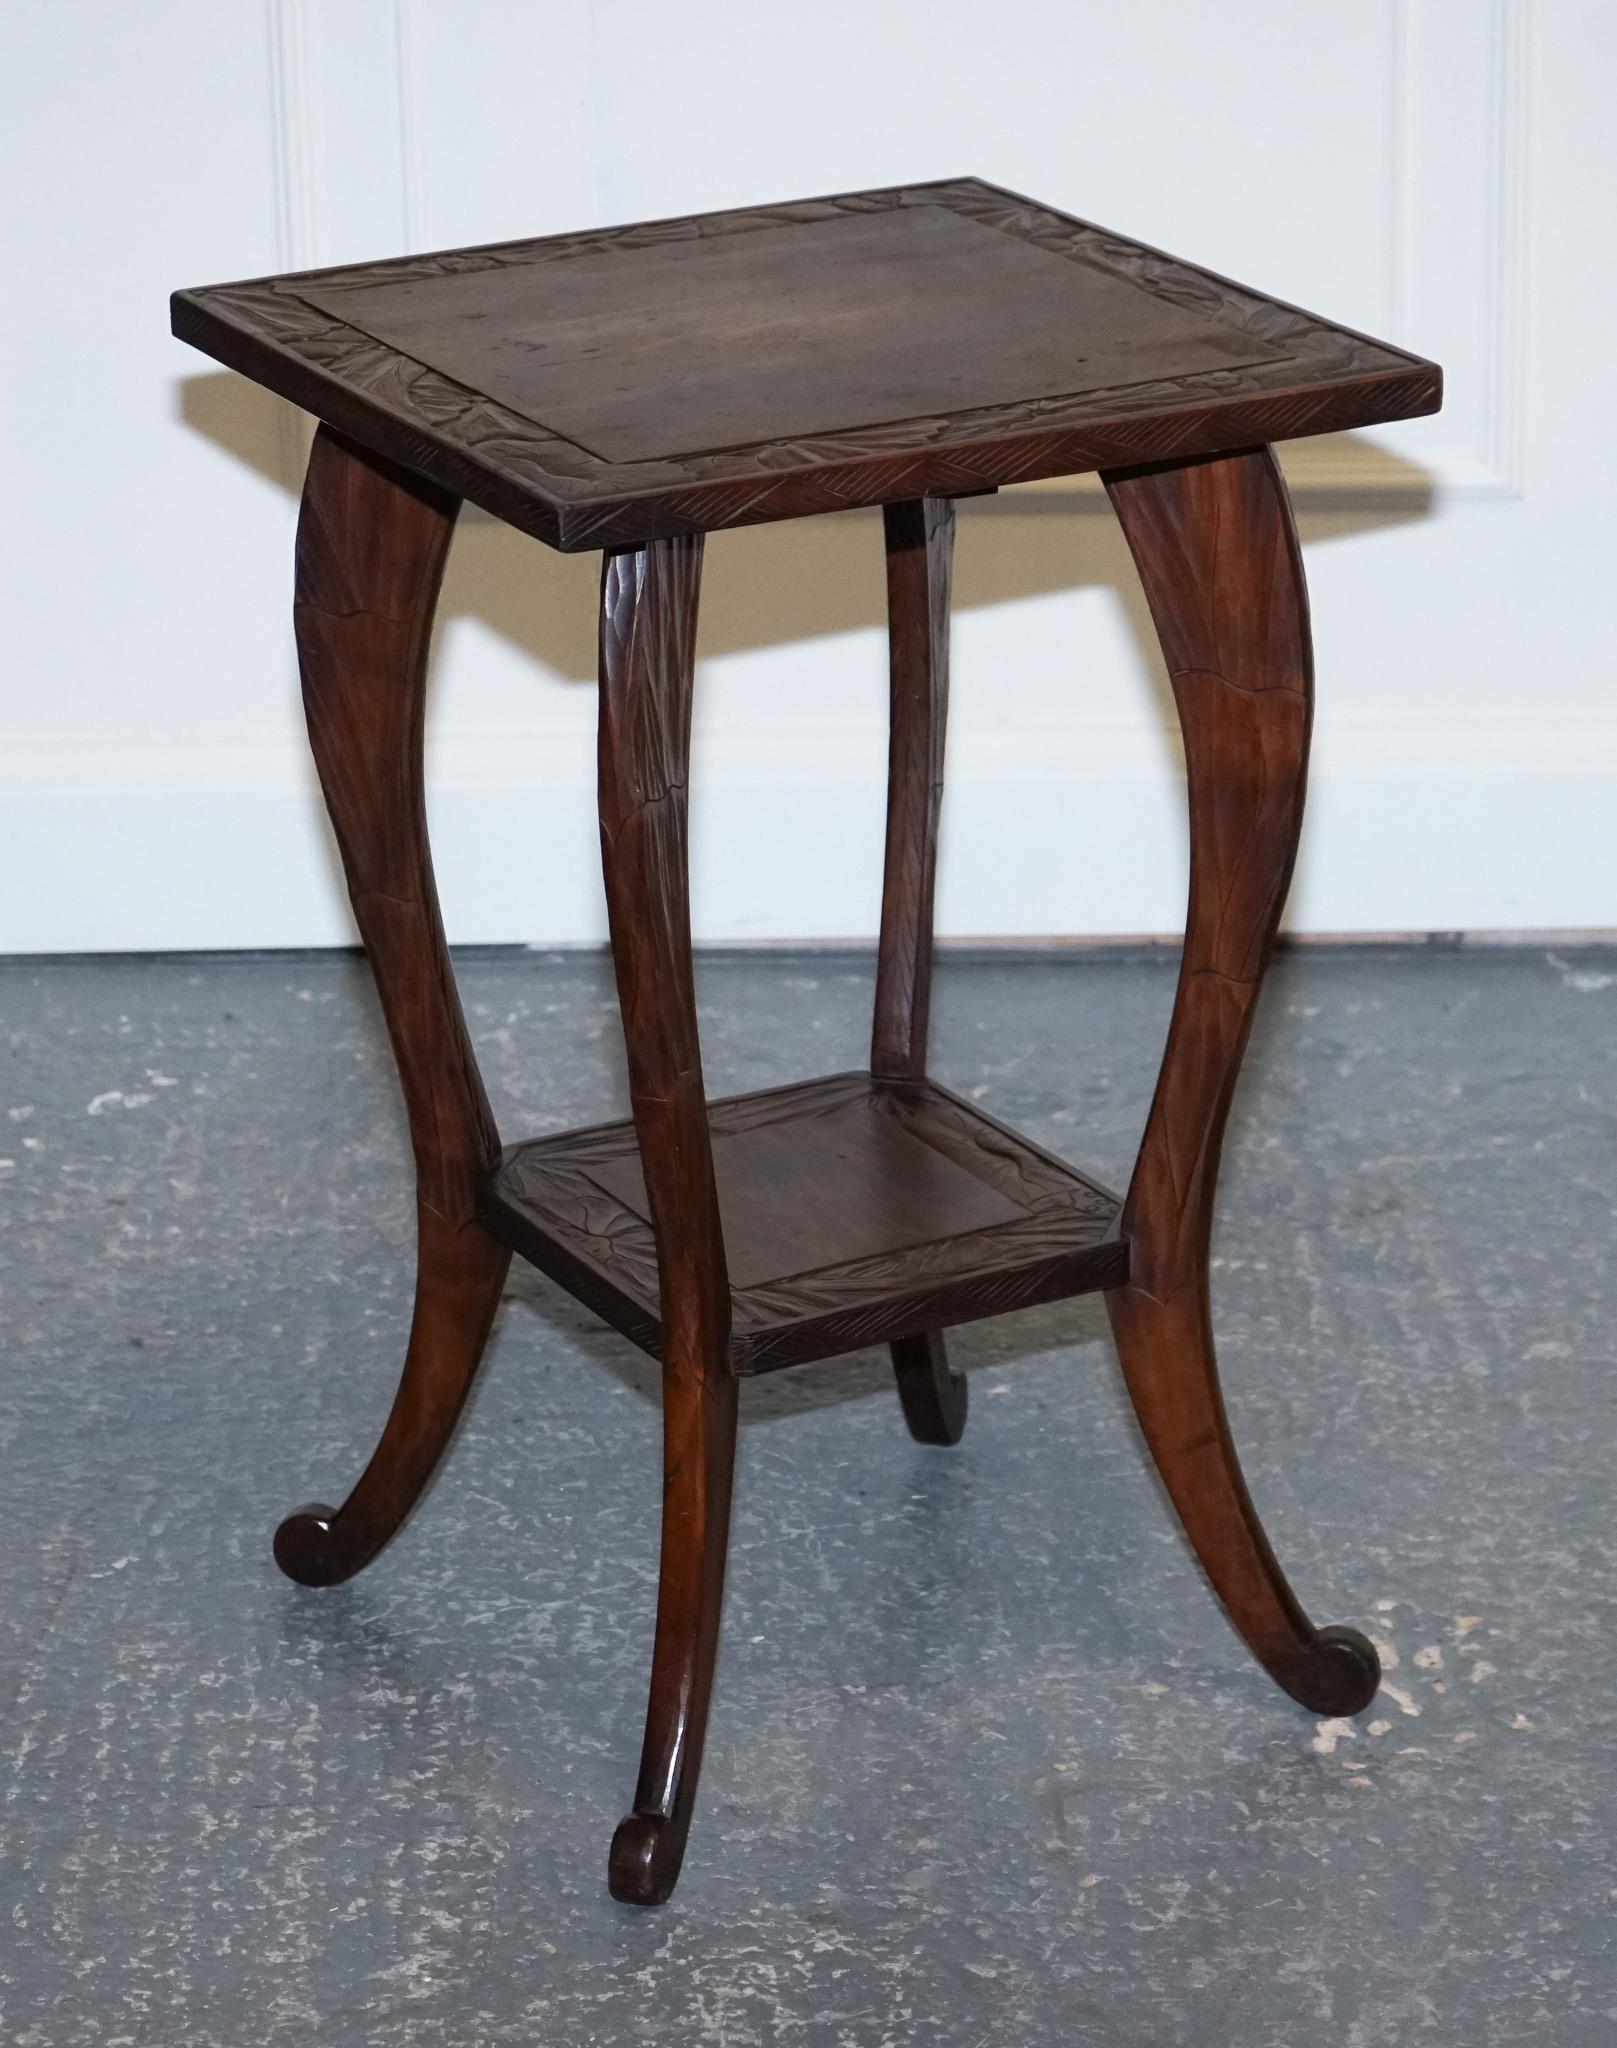 
Wir freuen uns, Ihnen dieses Produkt zum Kauf anbieten zu können  Atemberaubender Eichenholztisch aus den 1950er Jahren von Liberty.

Dieser handgeschnitzte Beistelltisch von Liberty's London aus den 1950er Jahren ist ein wahres Meisterwerk der